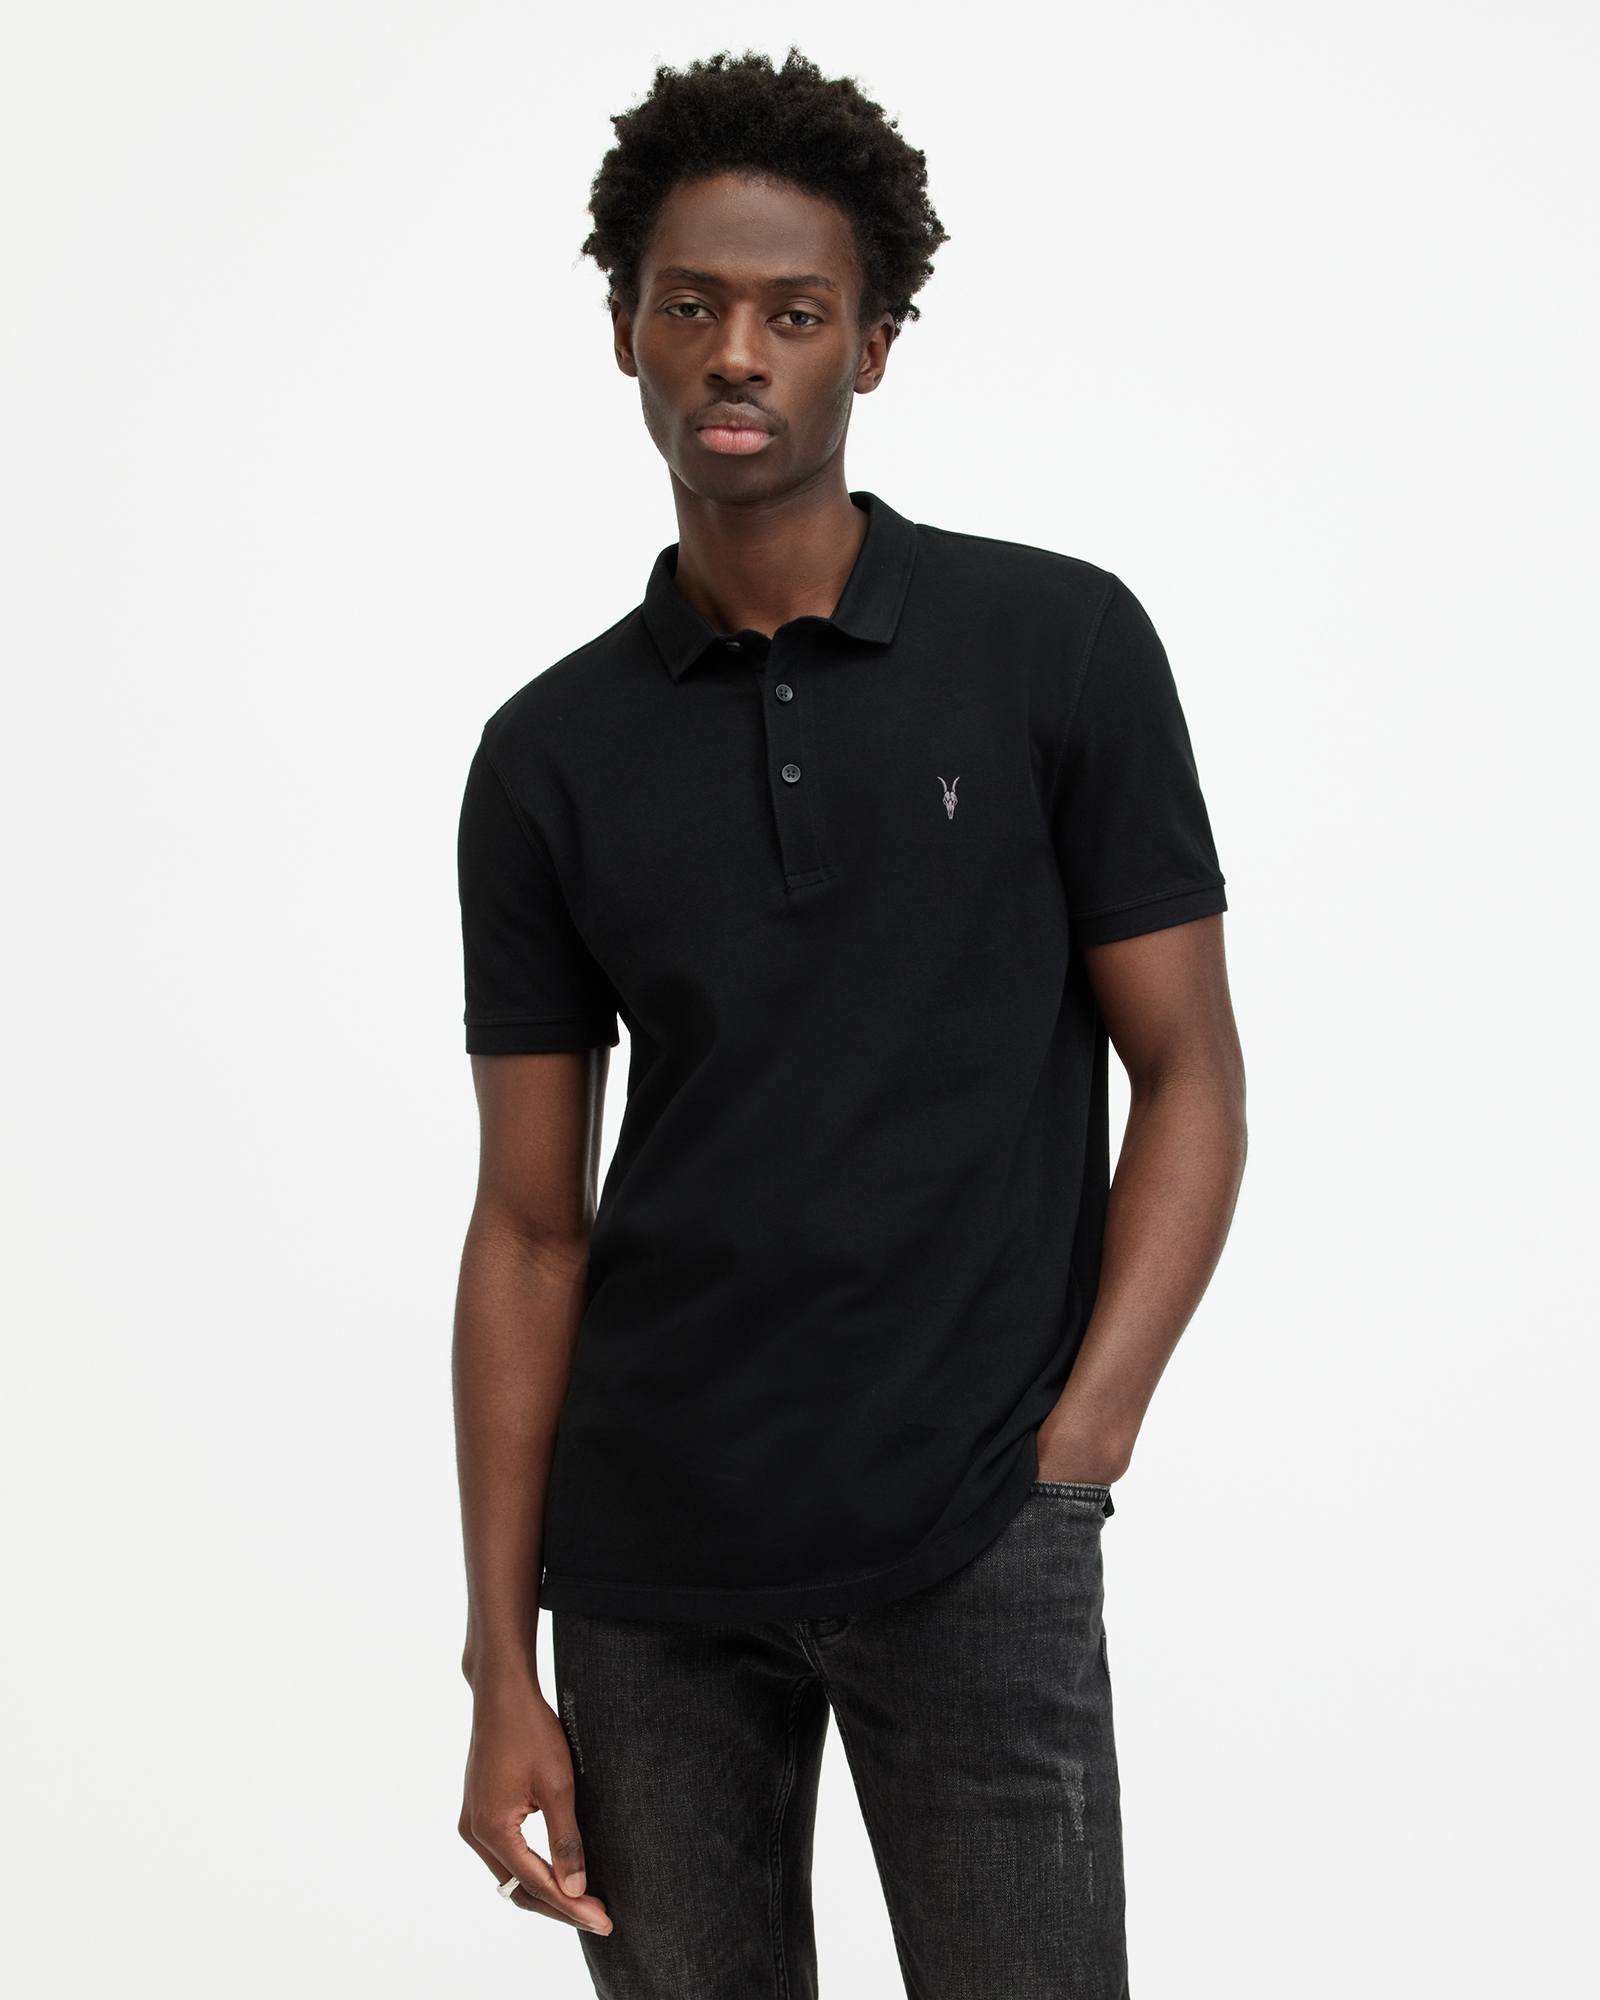 AllSaints Men's Cotton Slim Fit Reform Short Sleeve Three Button Polo Shirt, Black, Size: XL